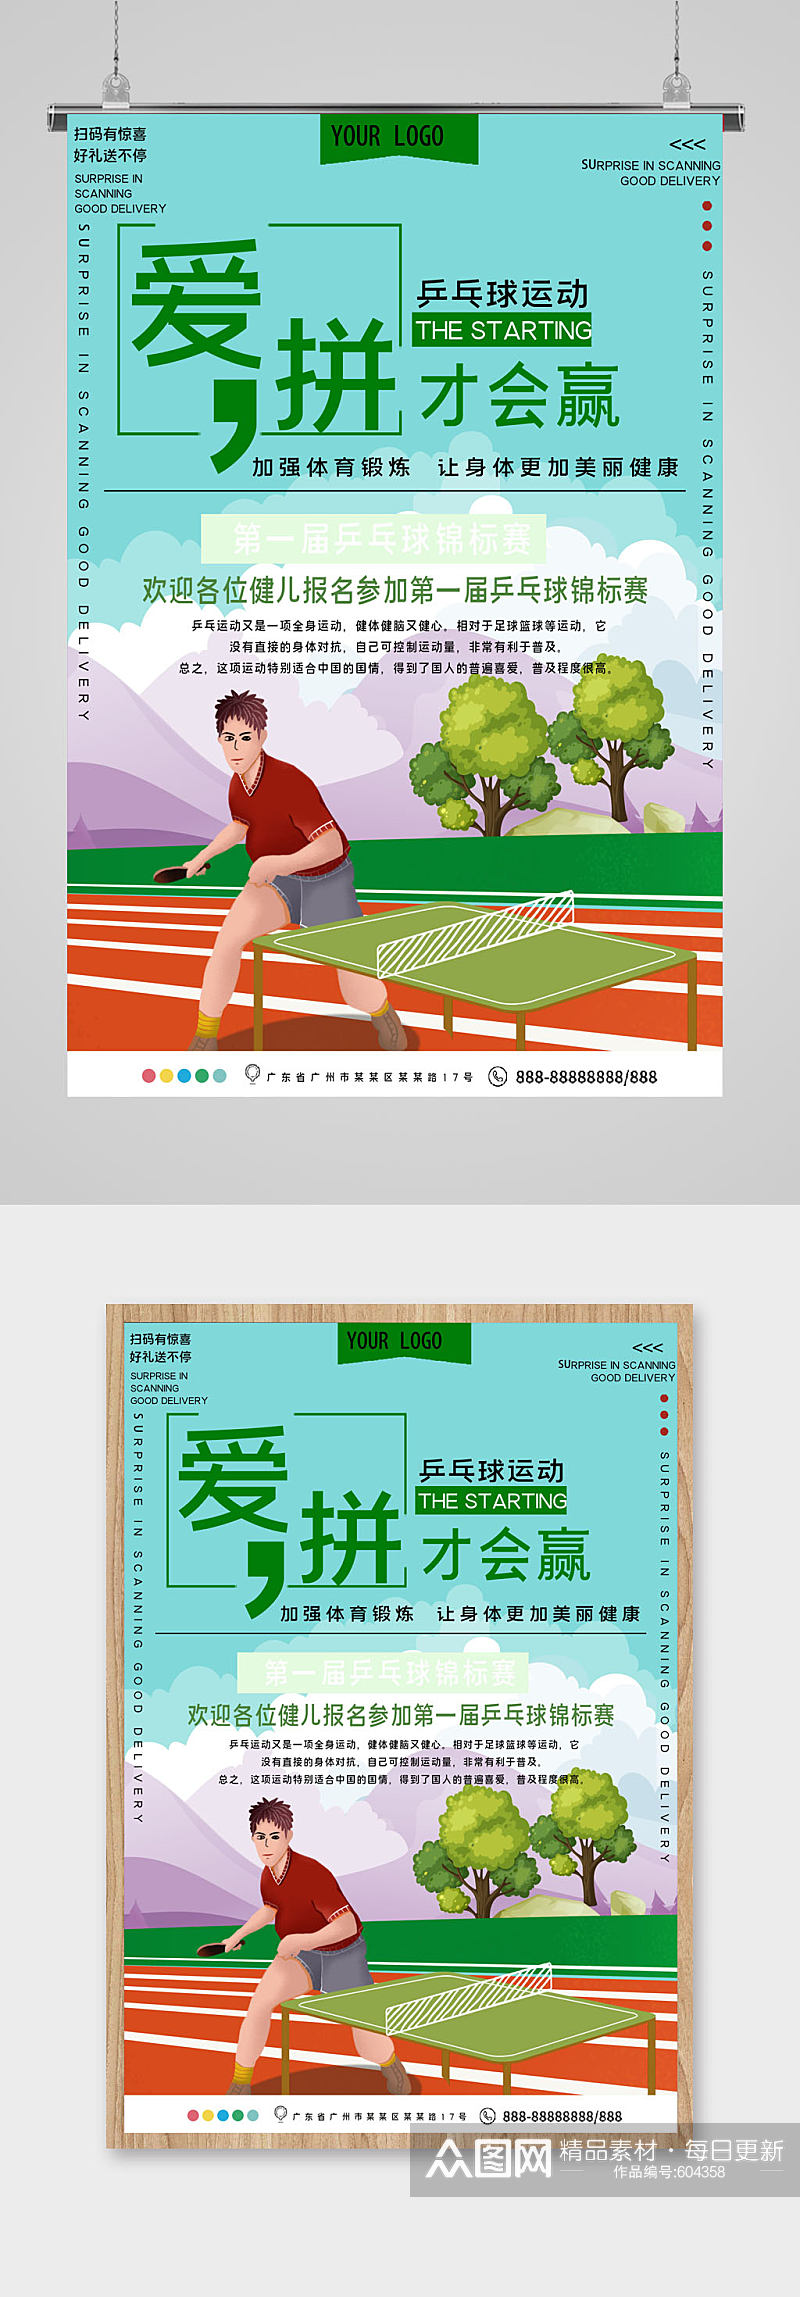 乒乓球比赛宣传海报素材